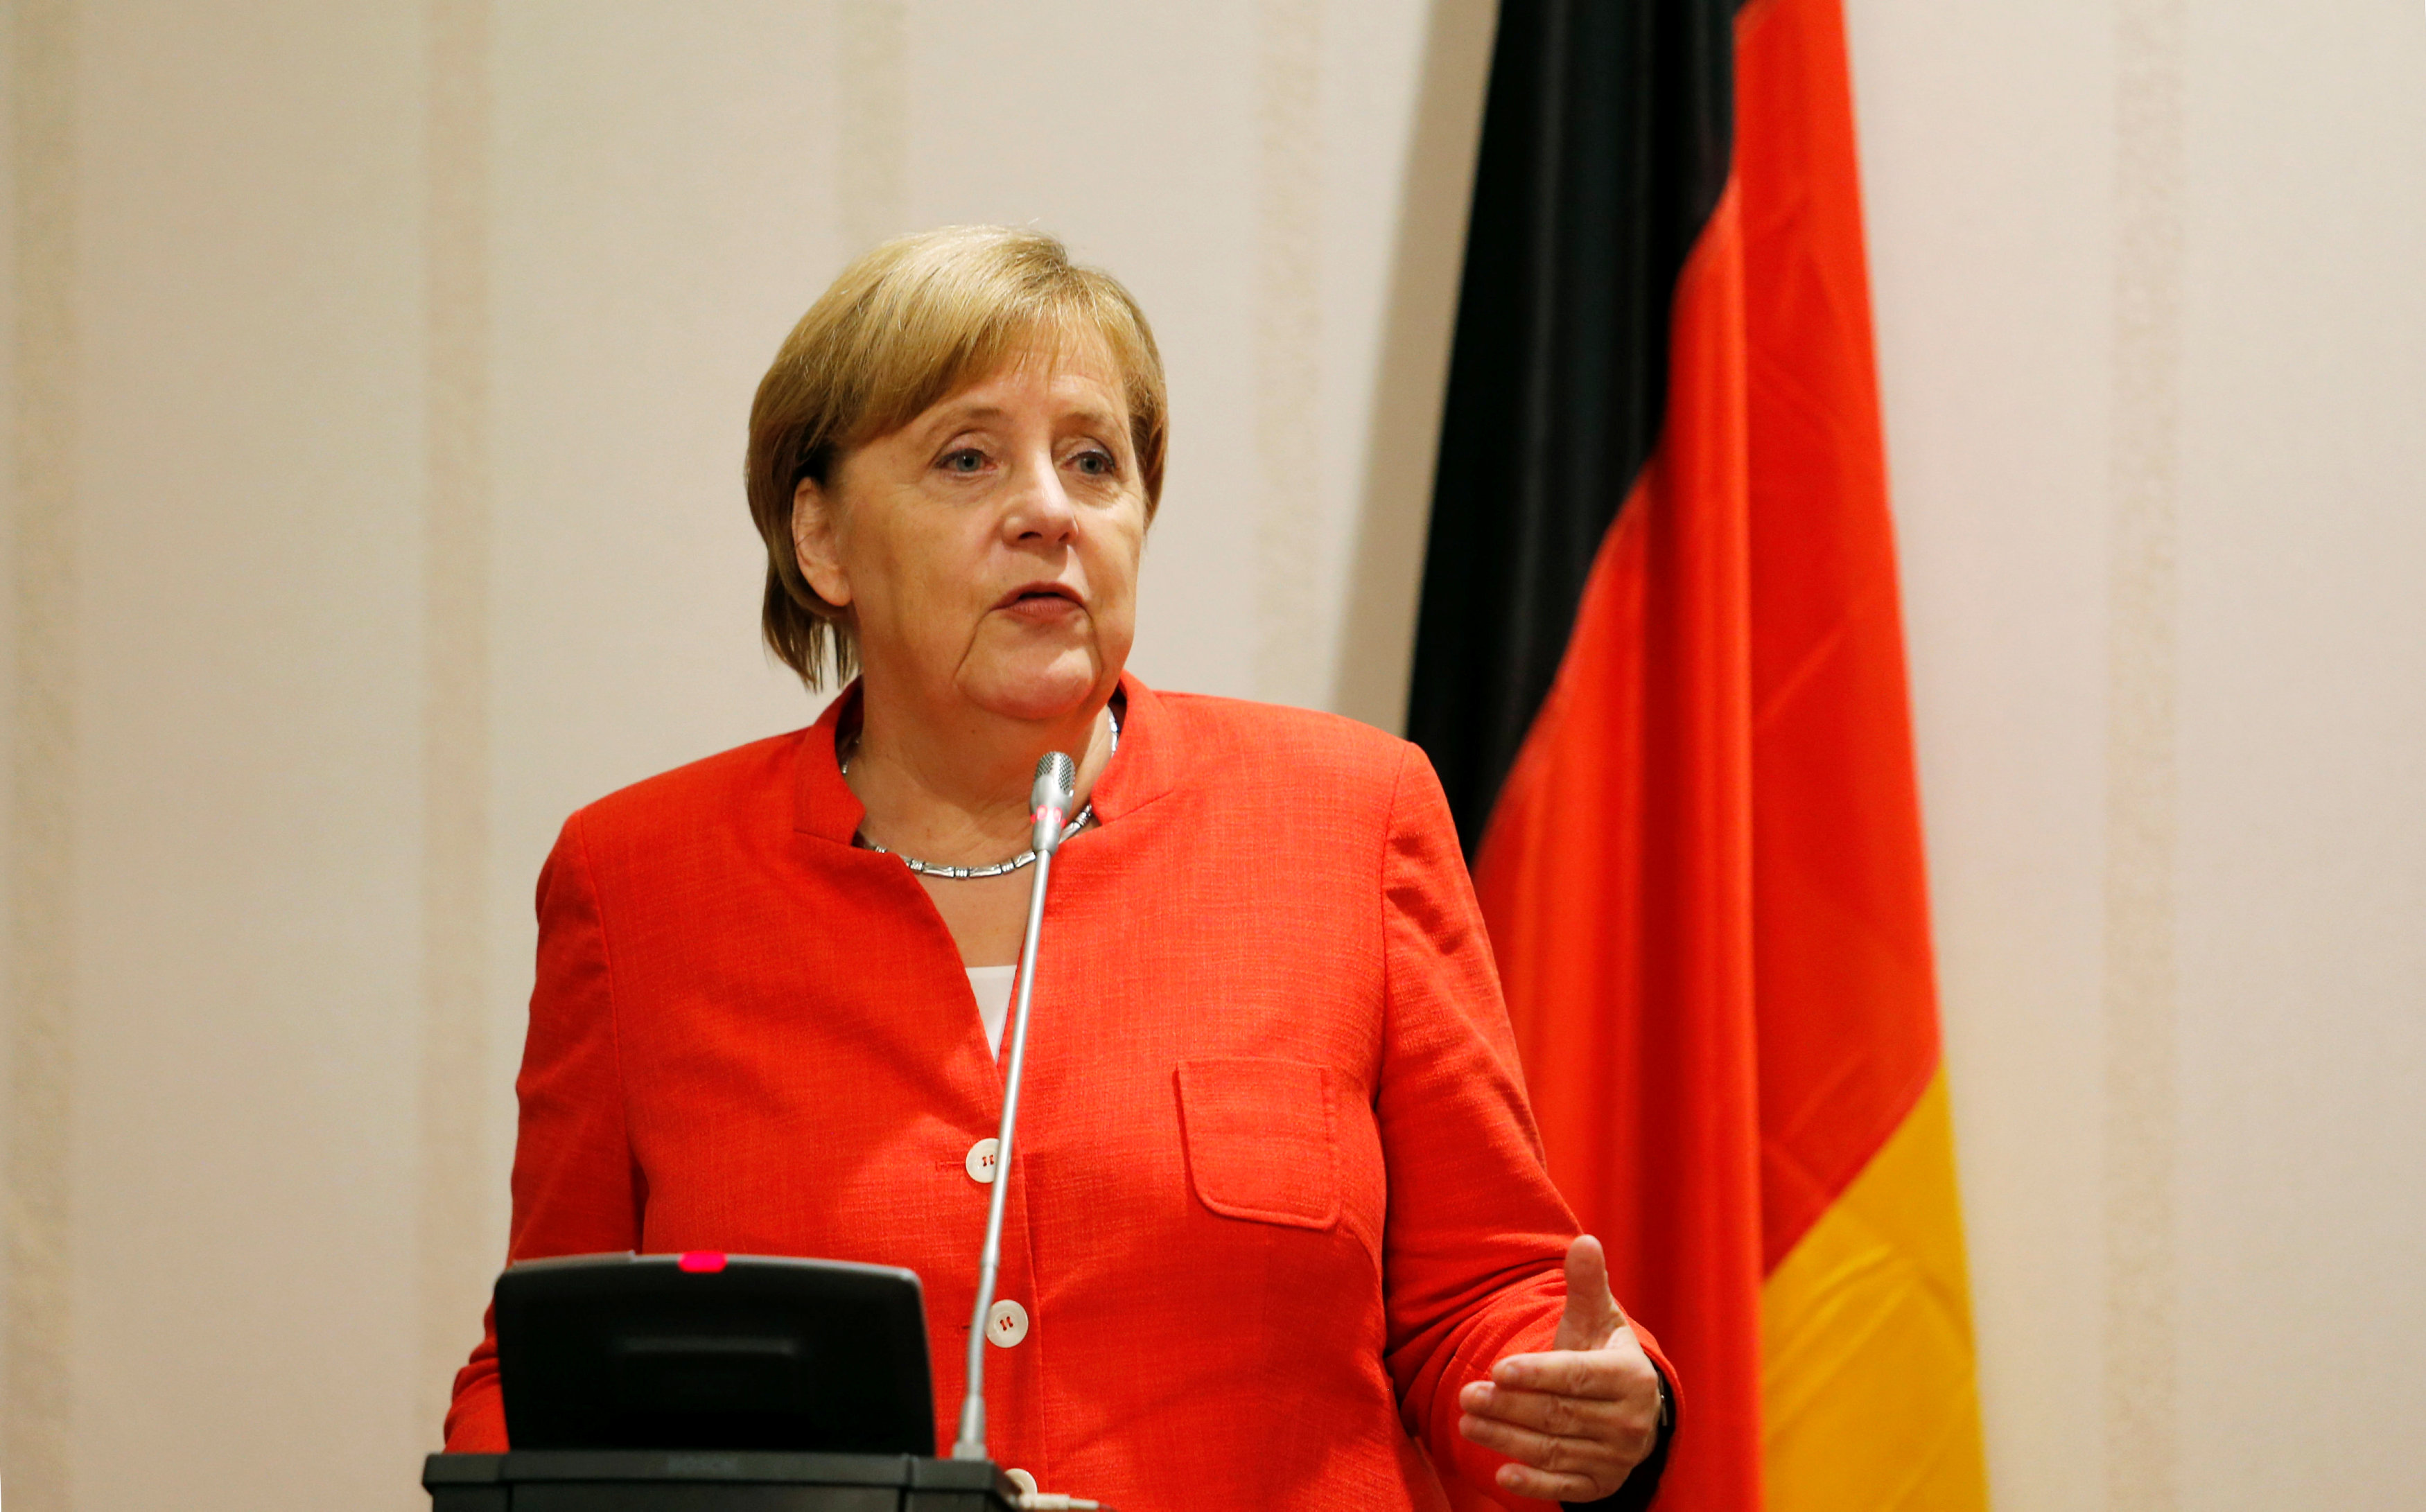 Γερμανία: Συρρικνώνονται τα ποσοστά των κομμάτων του κυβερνητικού συνασπισμού